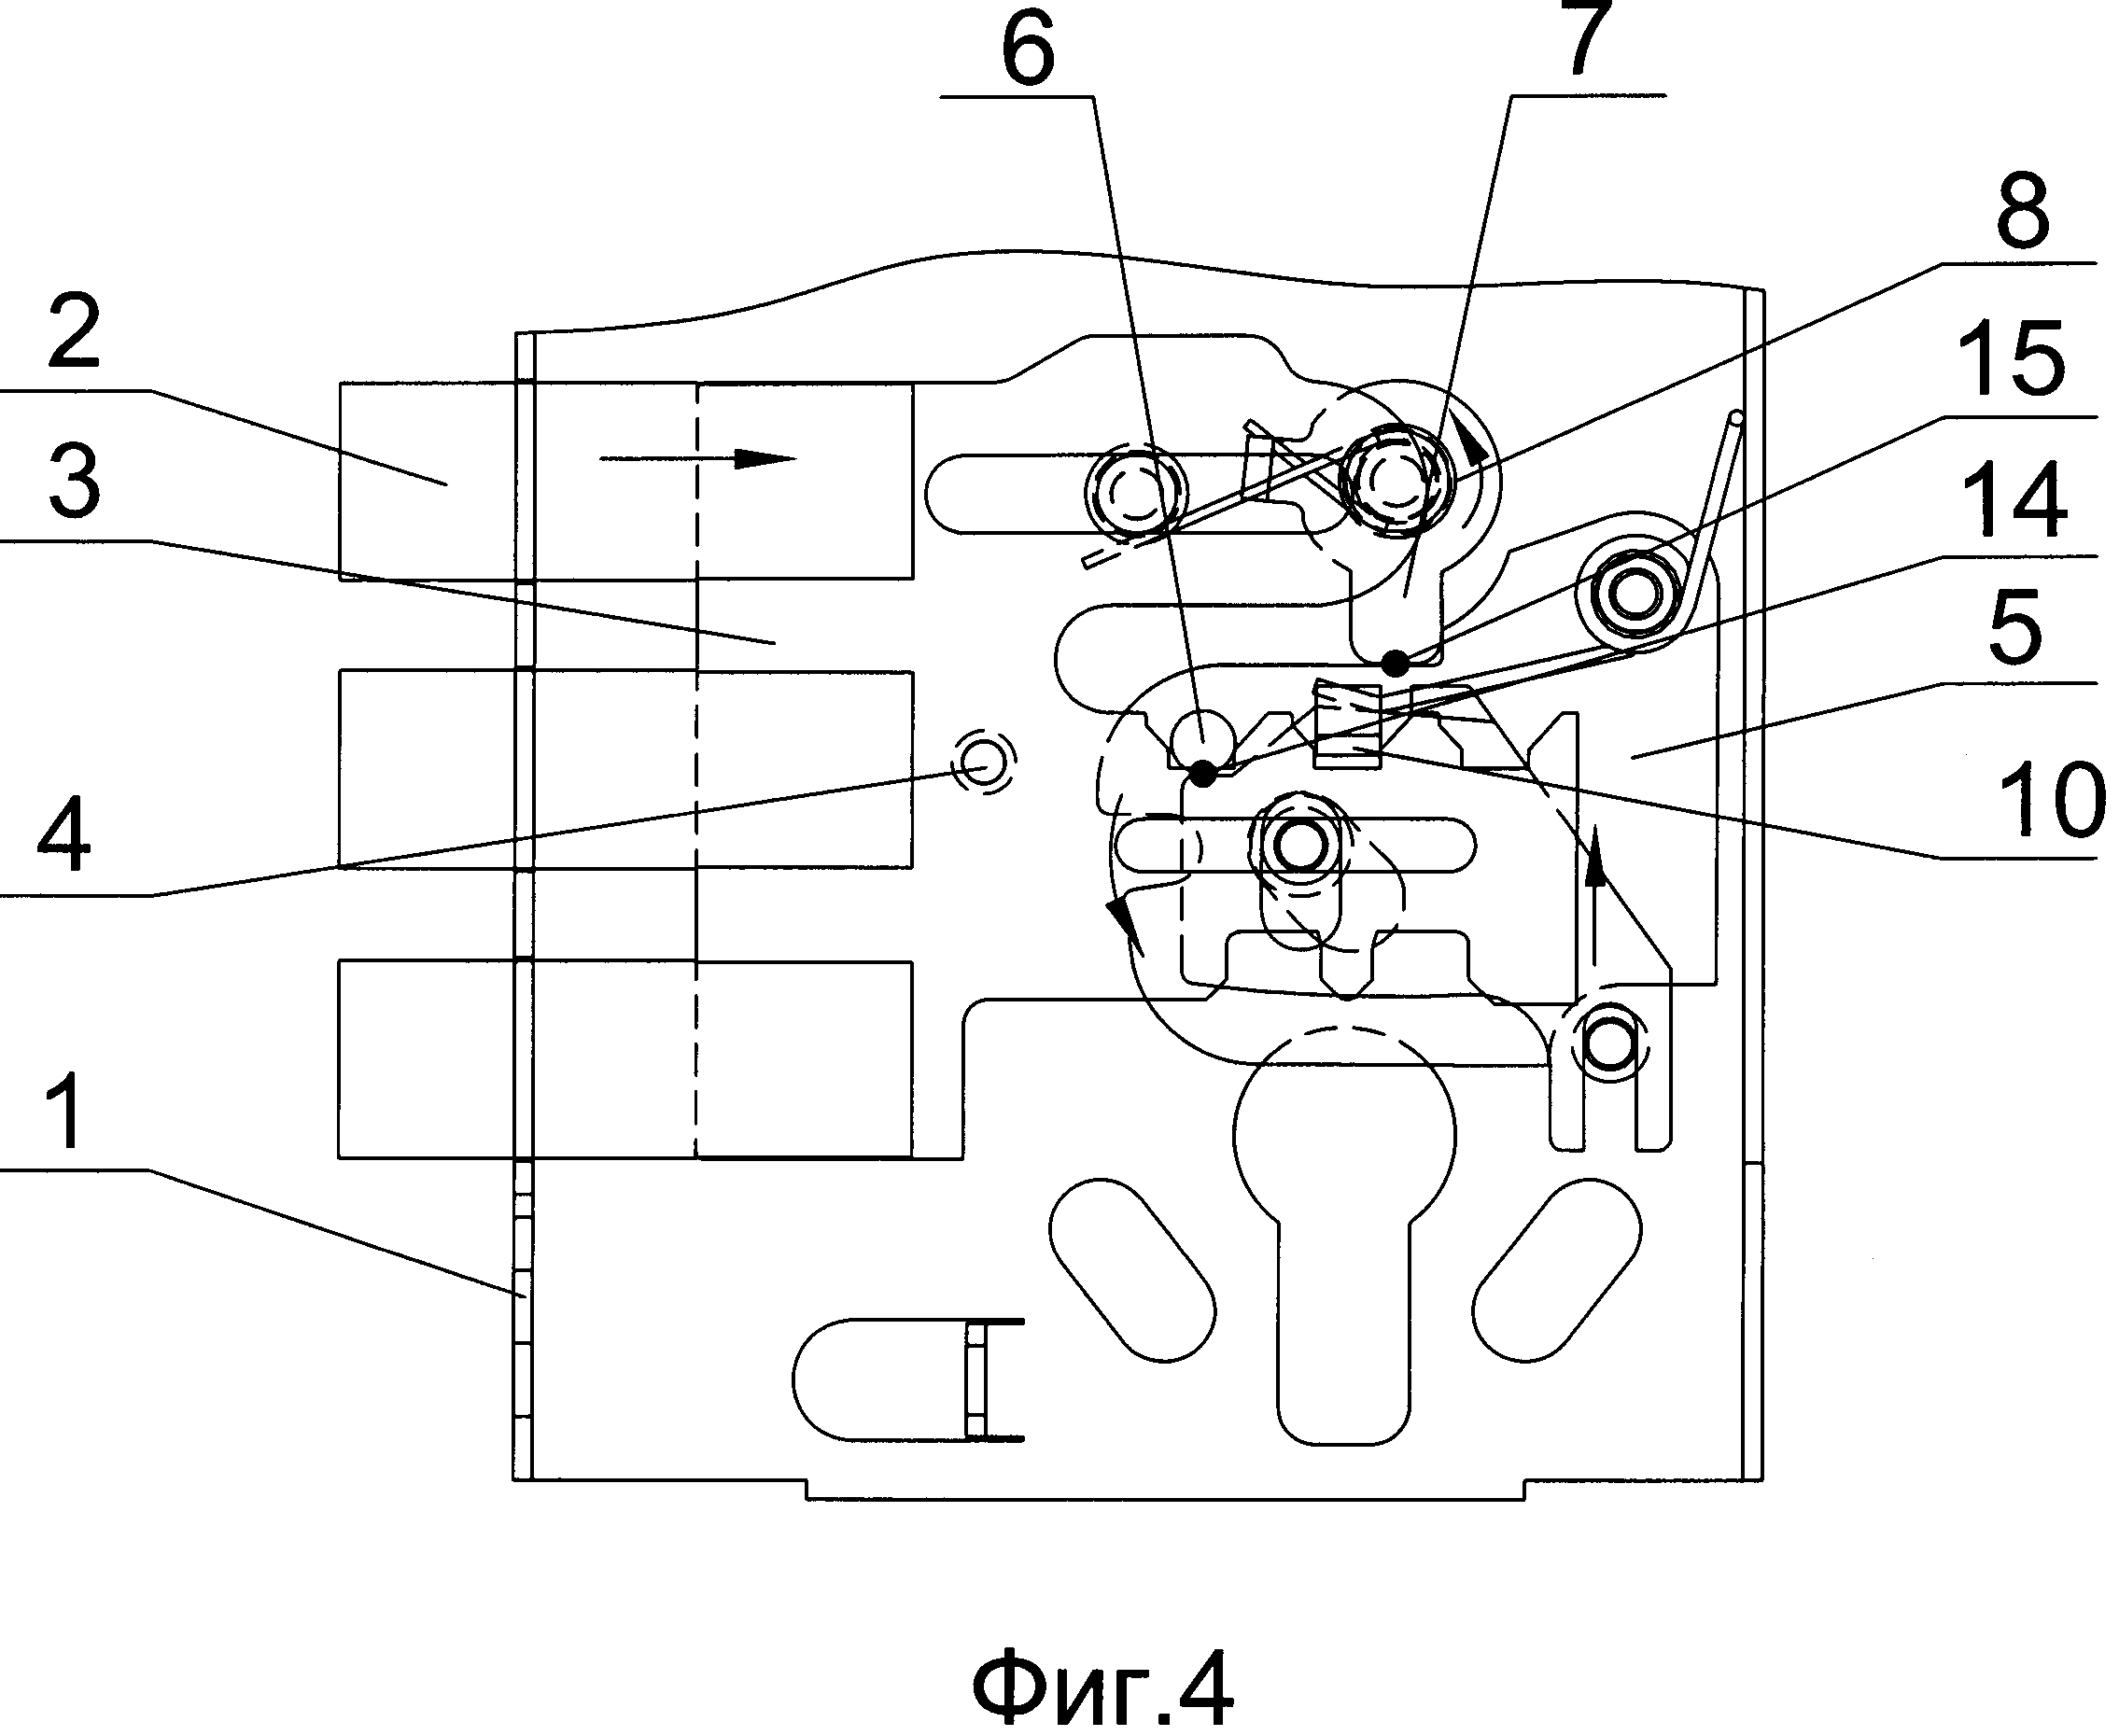 Схема дверного замка с защелкой